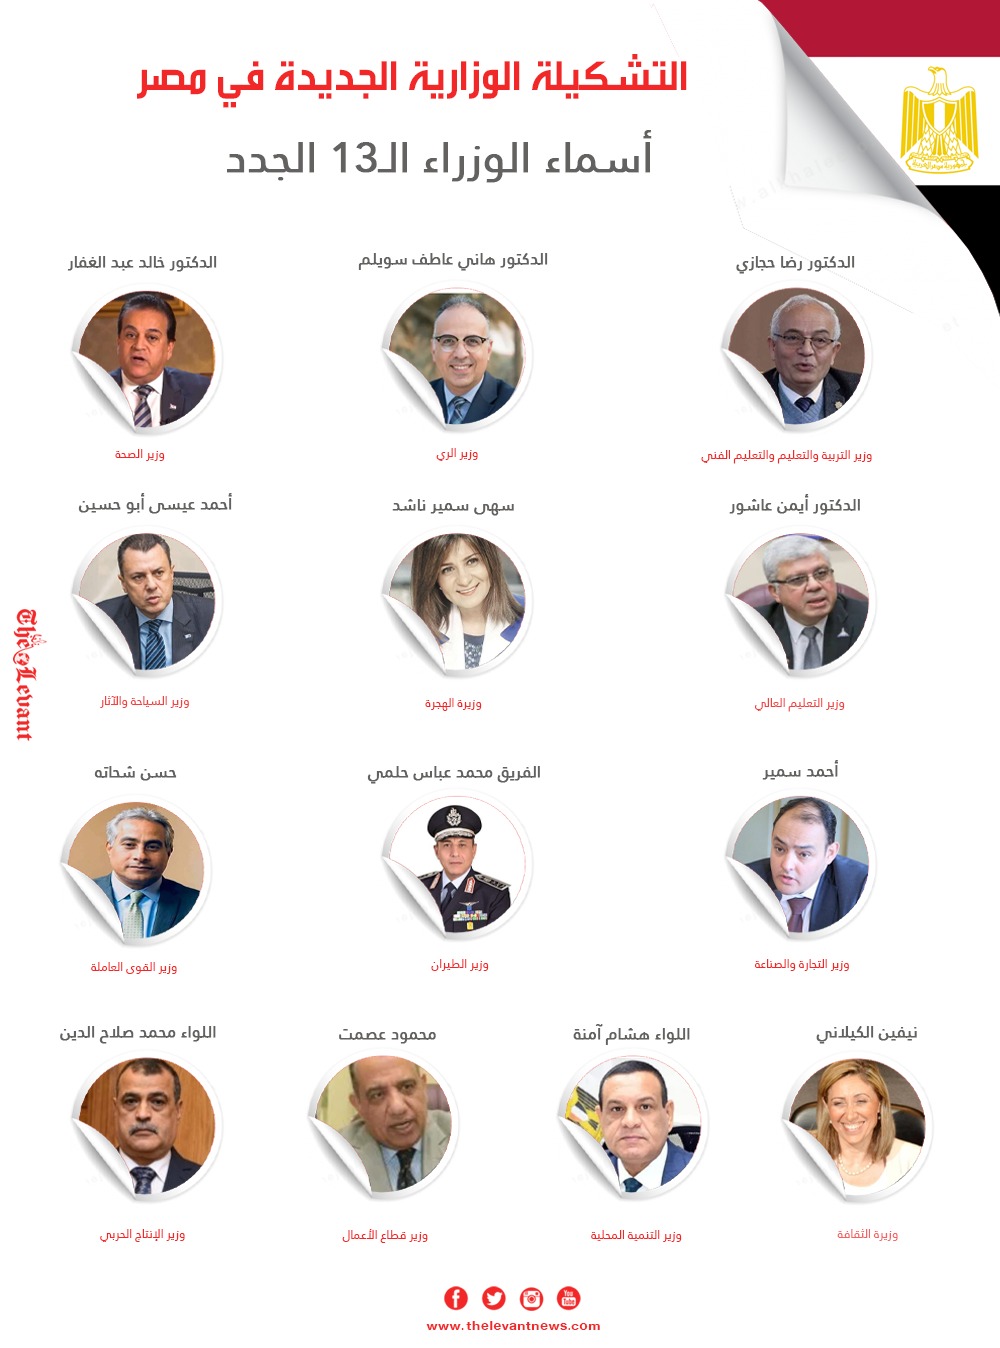 التشكيلة الوزارية الجديدة في مصر